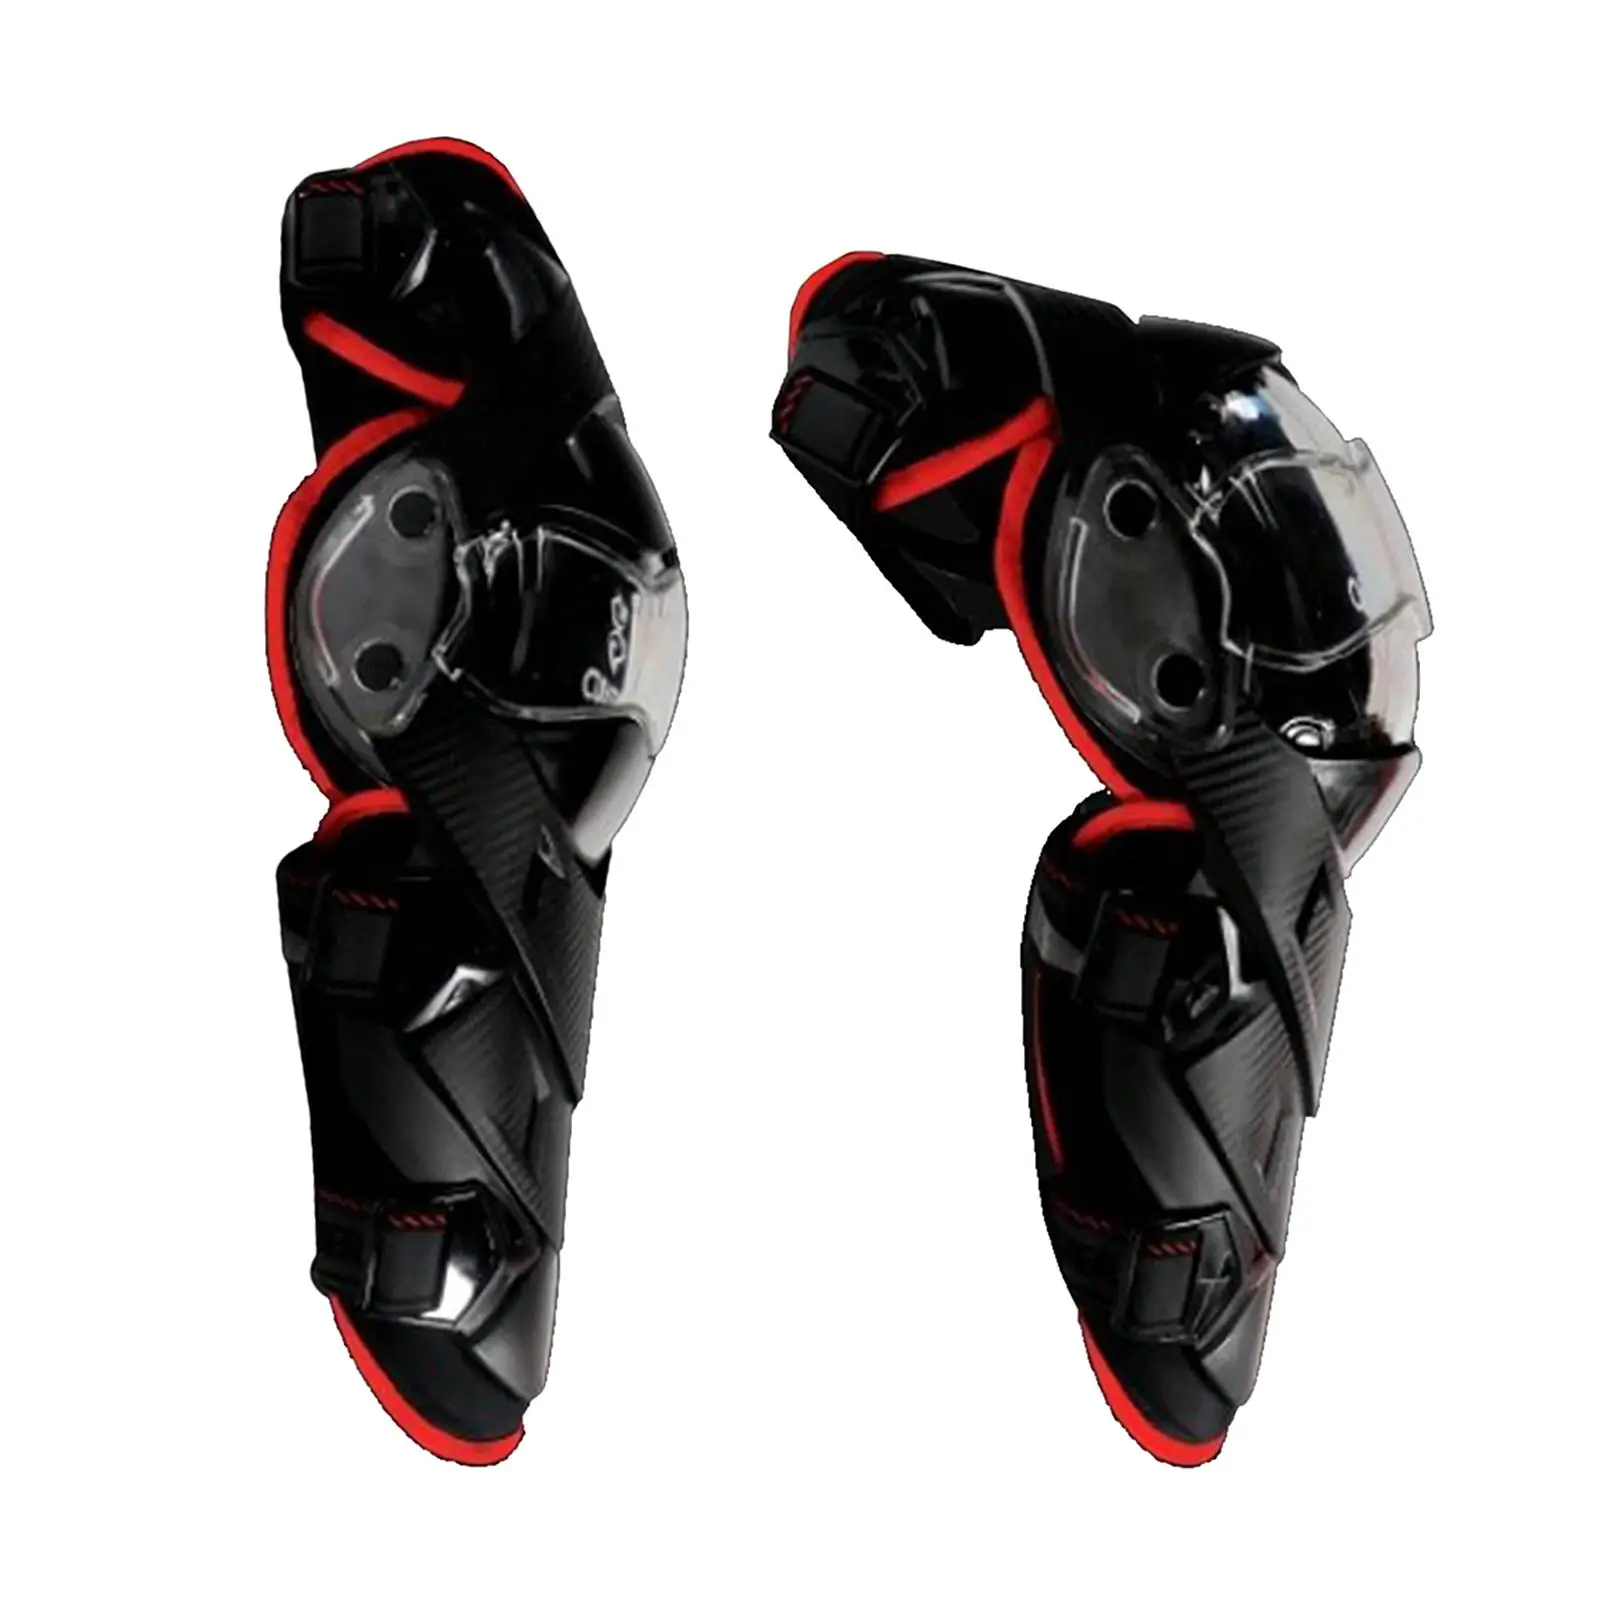 1 Pair Knee Pads Motorcycle - Adult Motorcycle Knee Pads/Adjustable Knee Pads  Elbow  for Motorcycle Cycling Racing